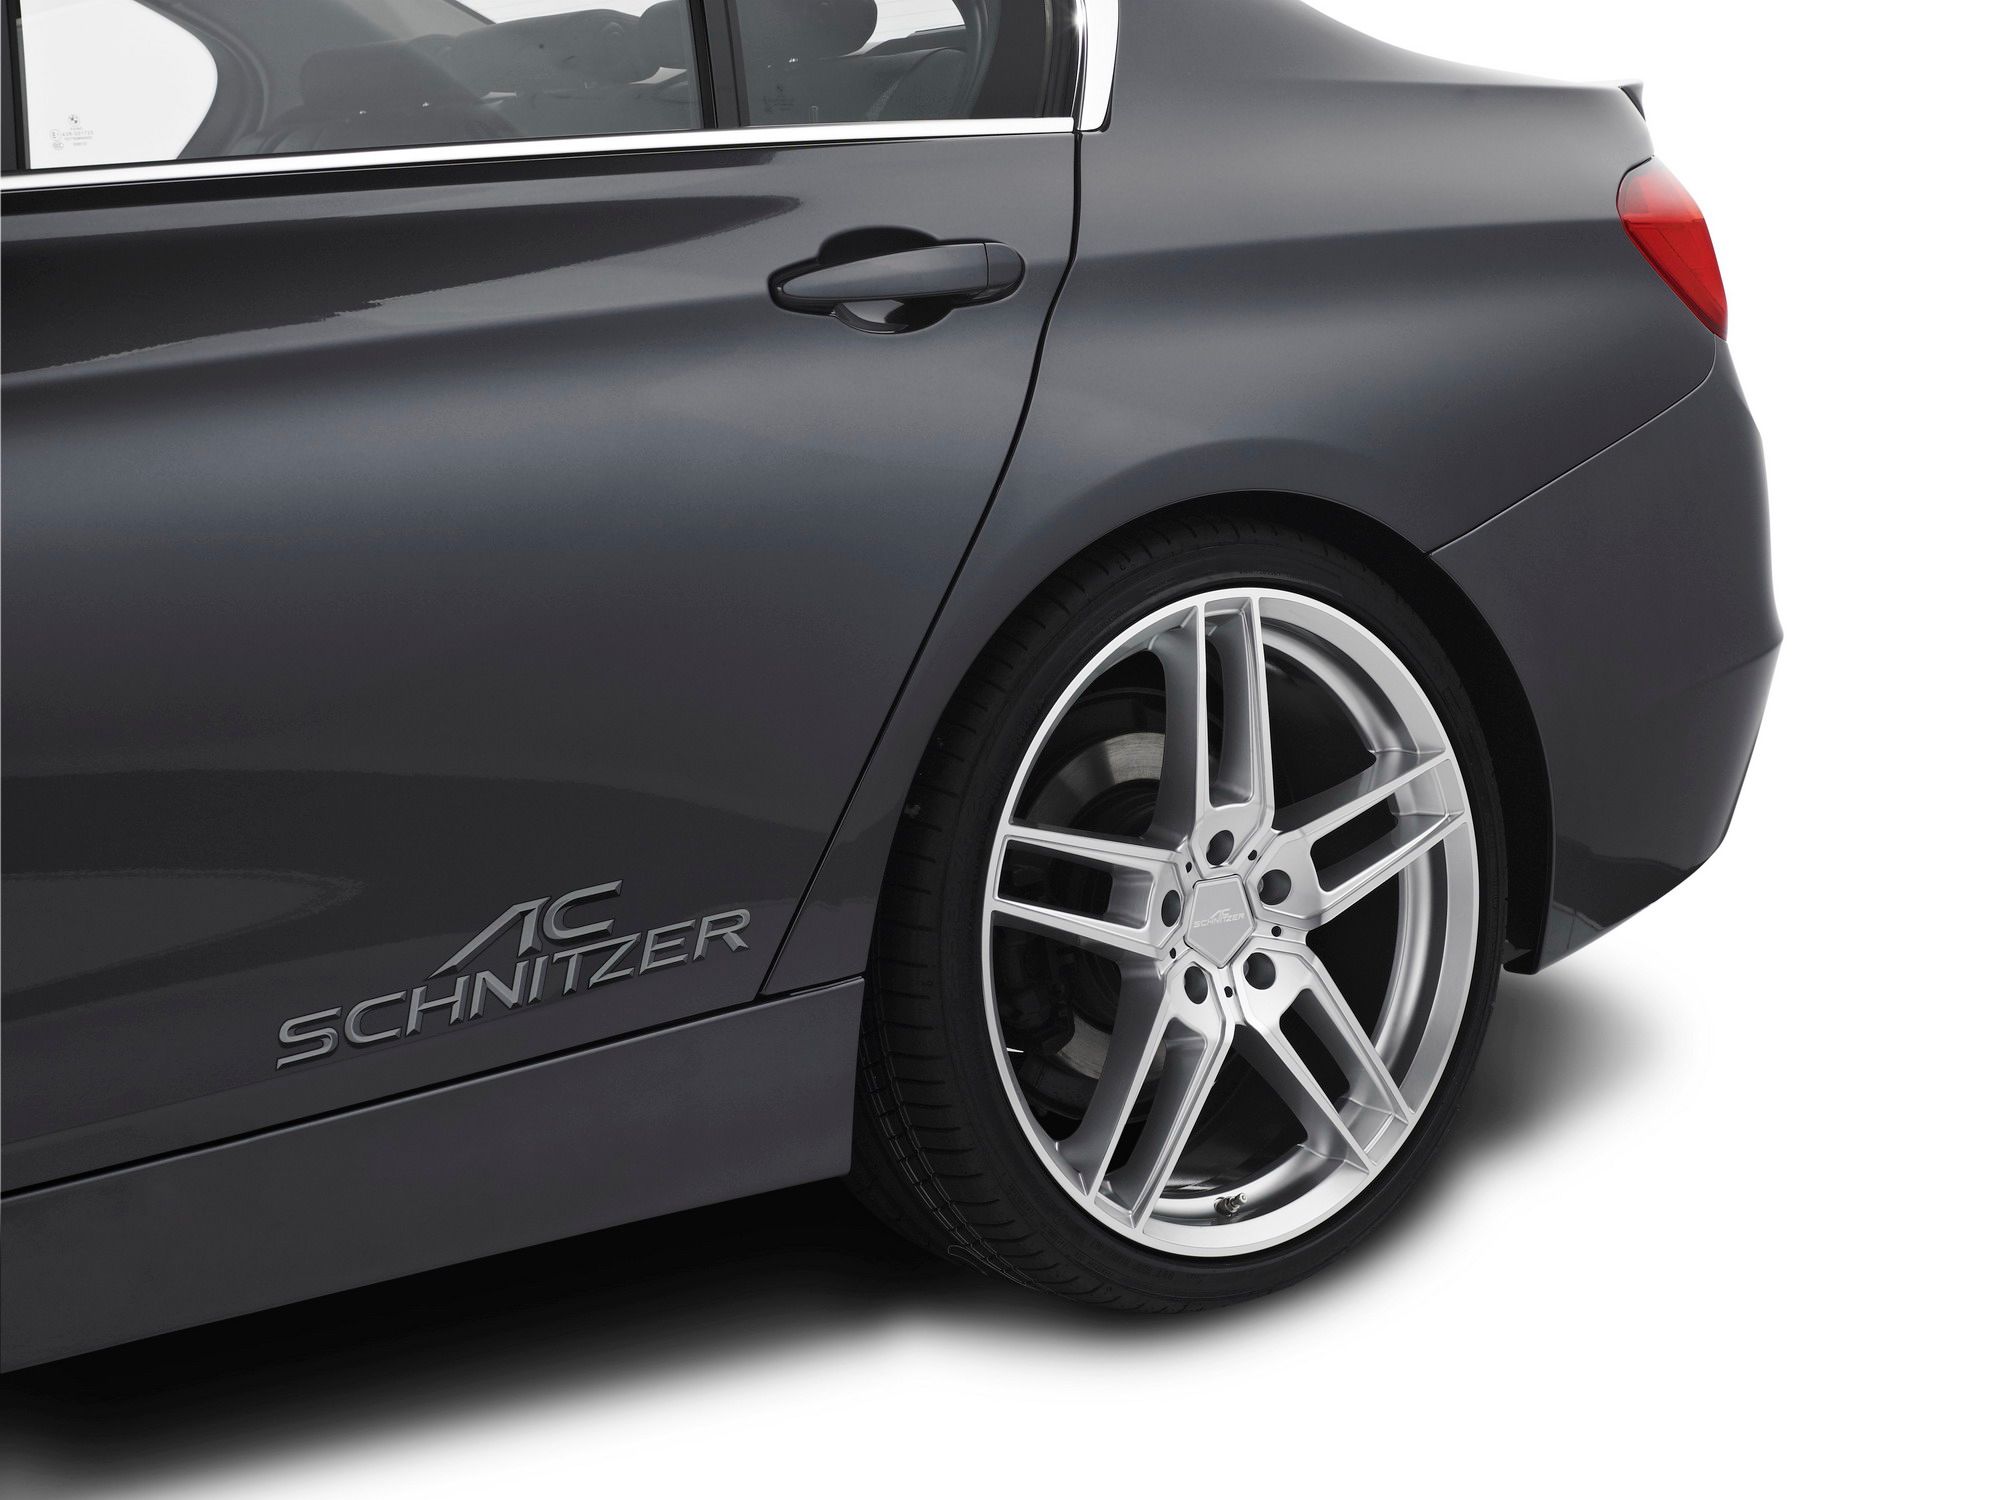 2012 BMW ACS3 2.8 Turbo by AC Schnitzer